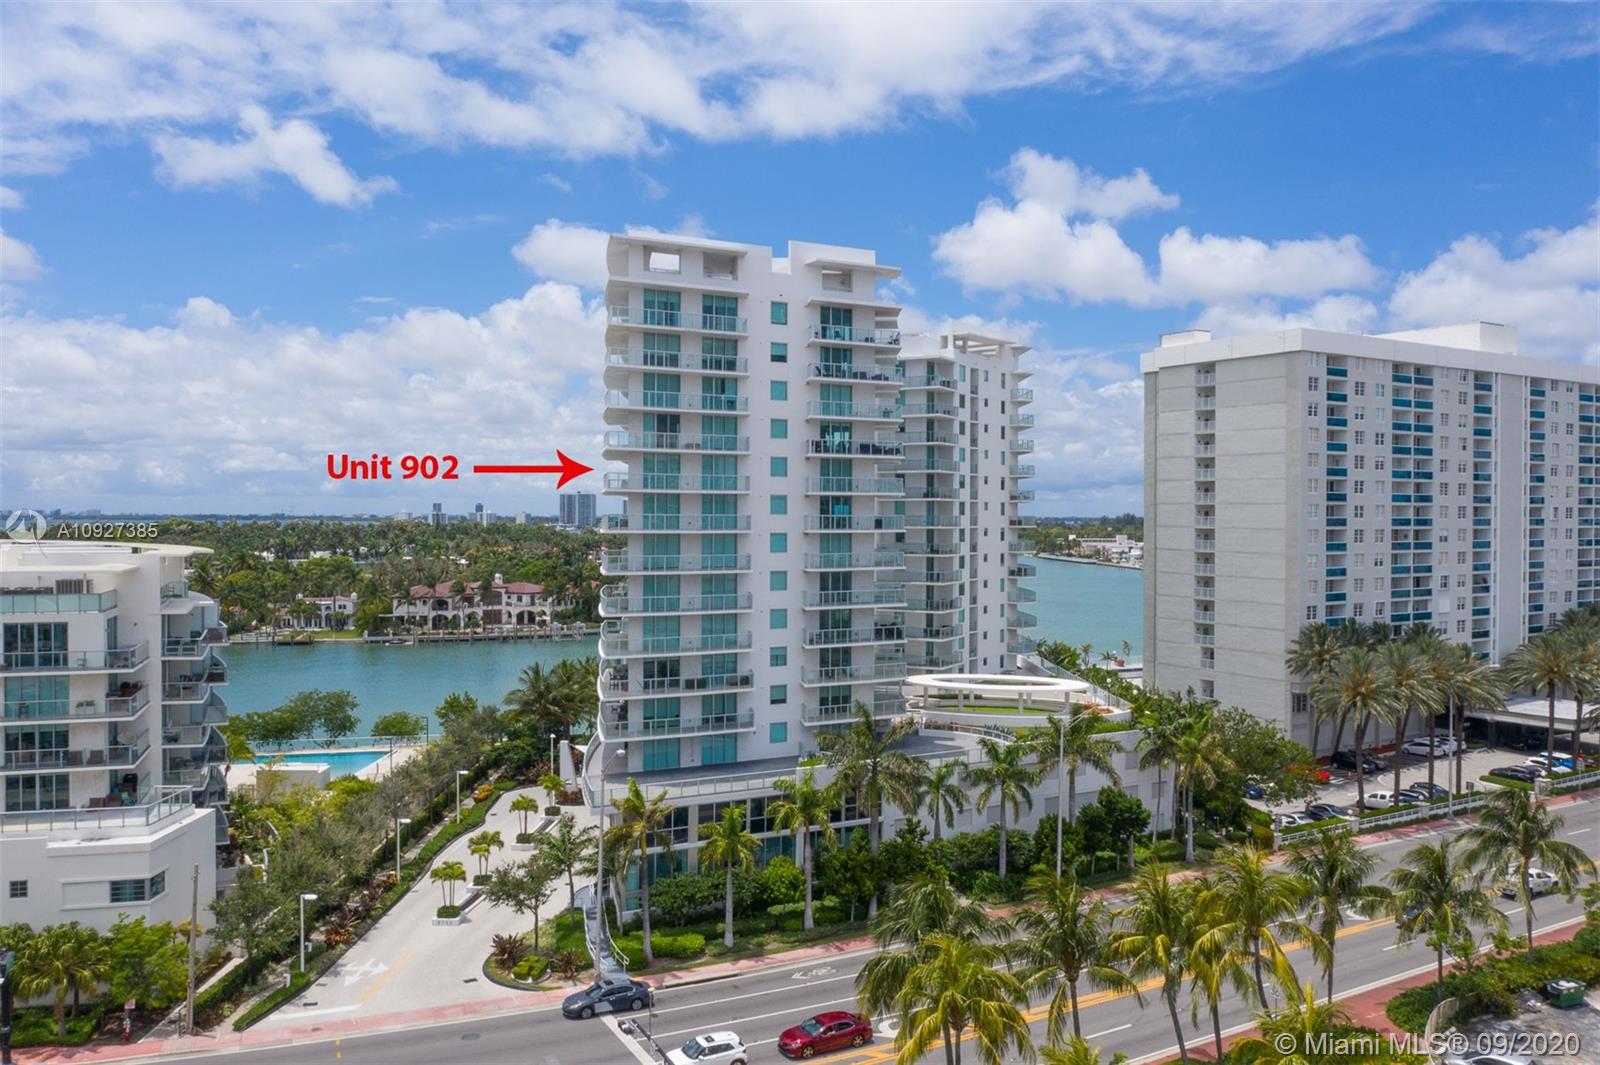 Eden House Unit #902 Condo for Rent in North Beach - Miami Beach Condos ...